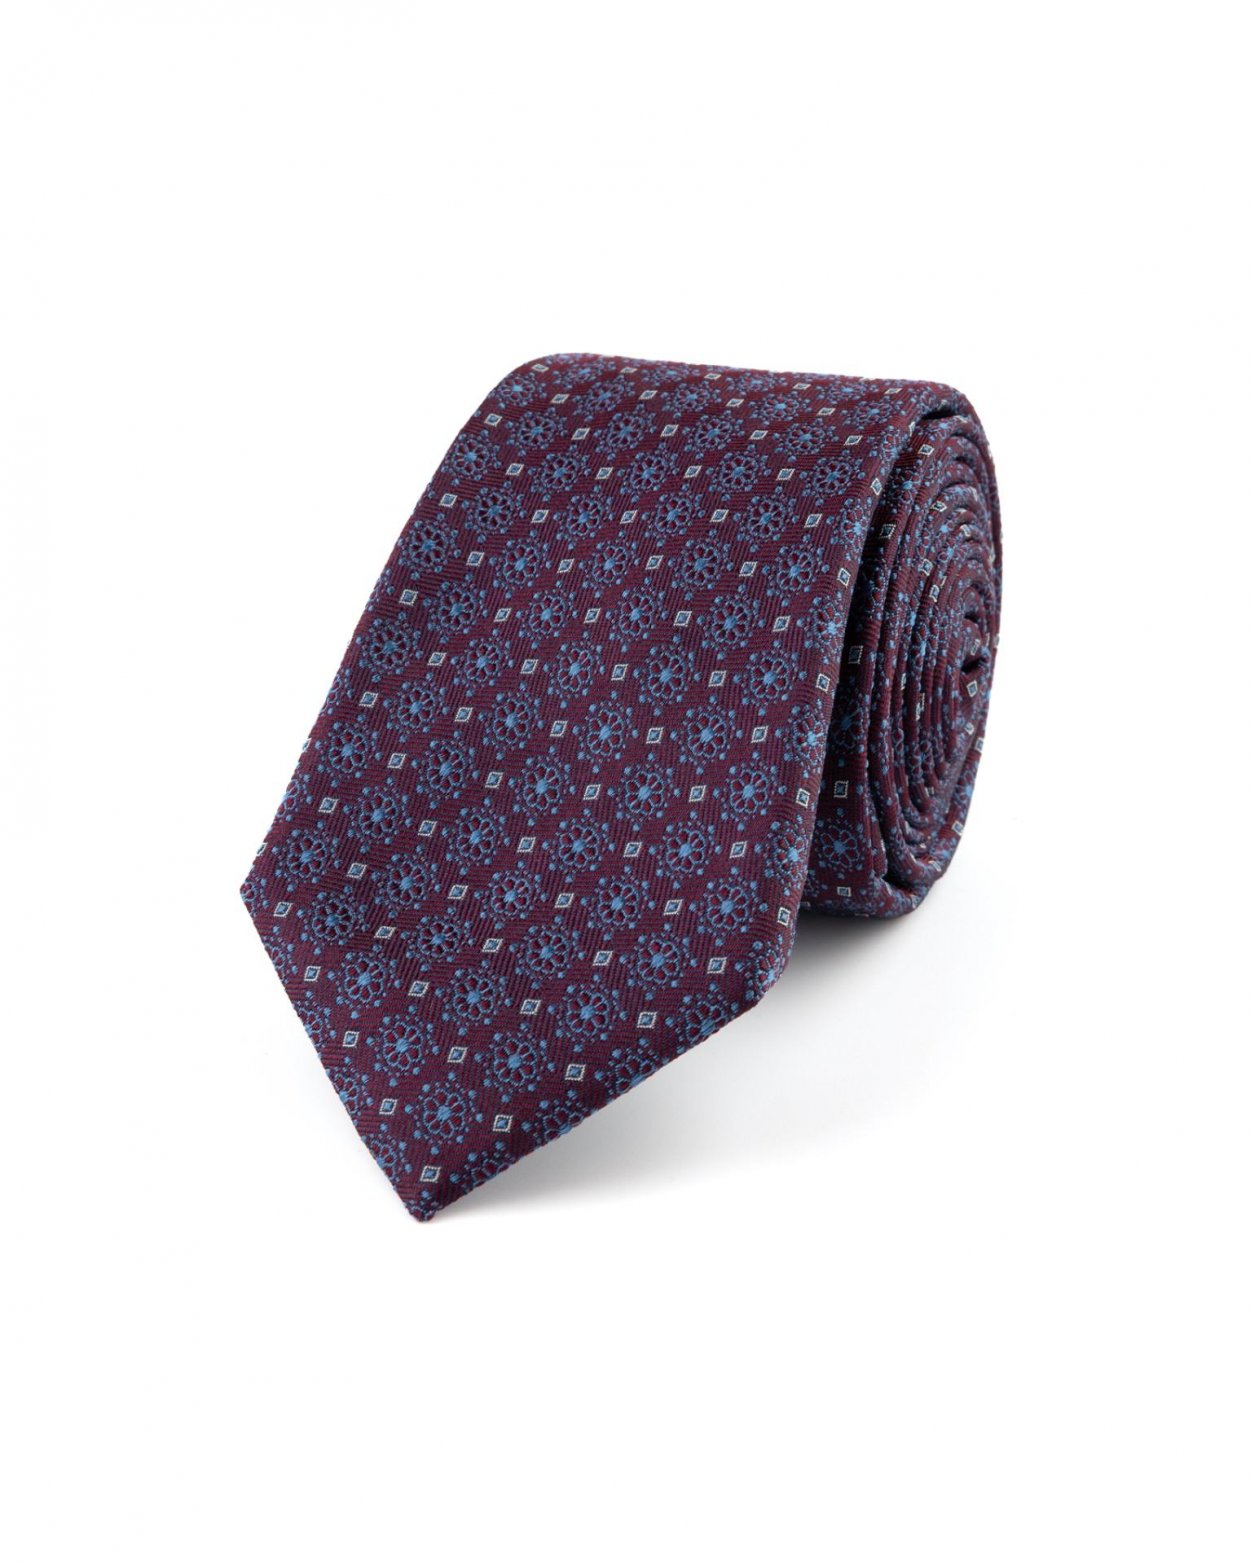 Vínová hedvábná kravata s jemným vzorem